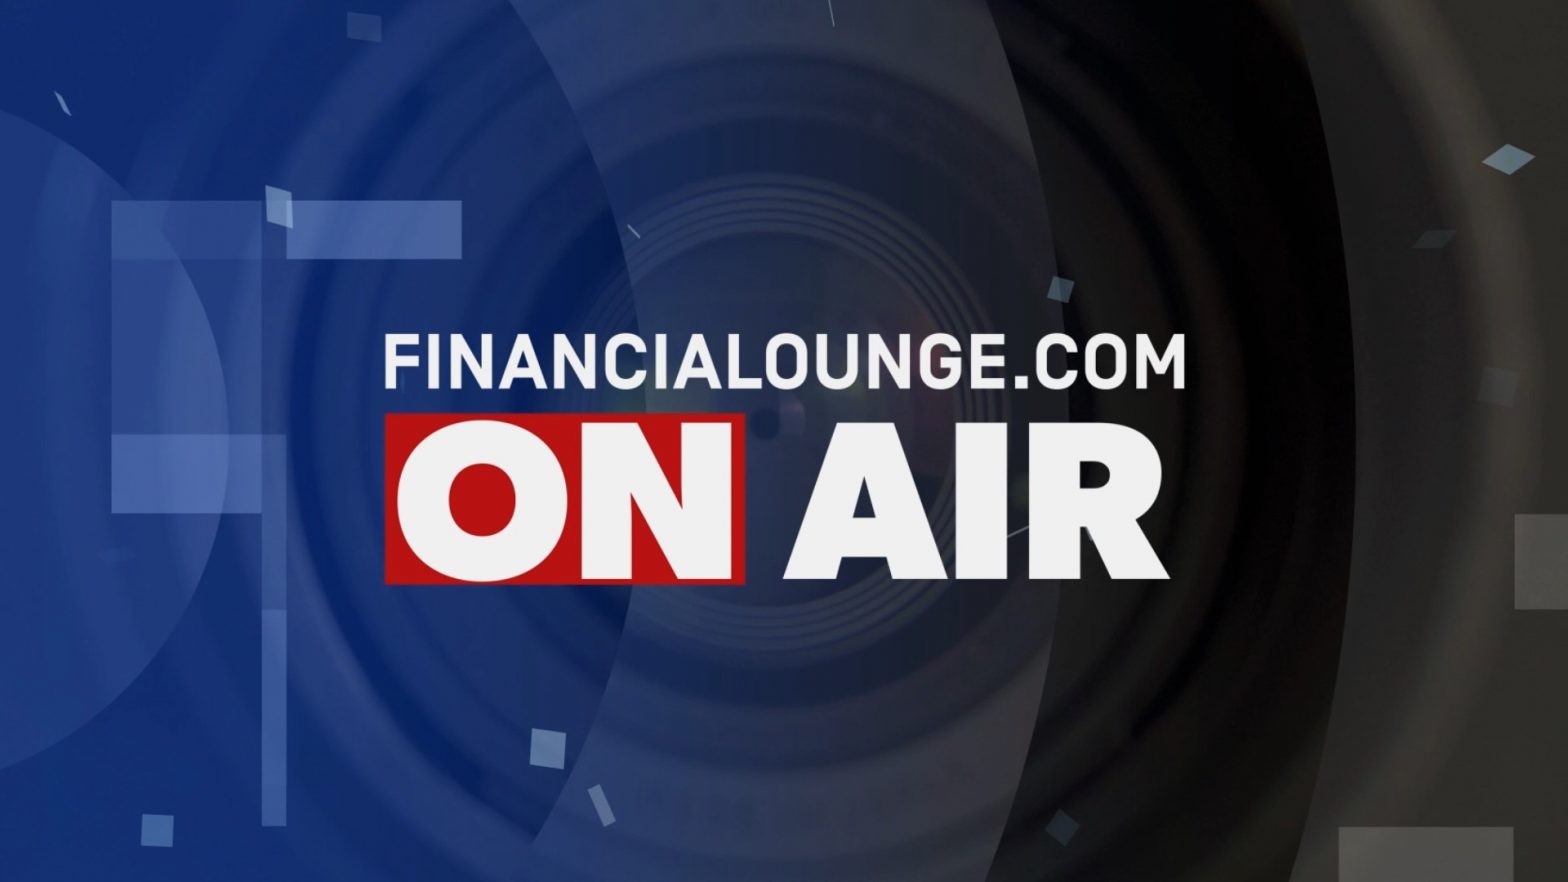 financialounge.com Borse caute, salta il vertice in Giordania - Edizione del 18 ottobre